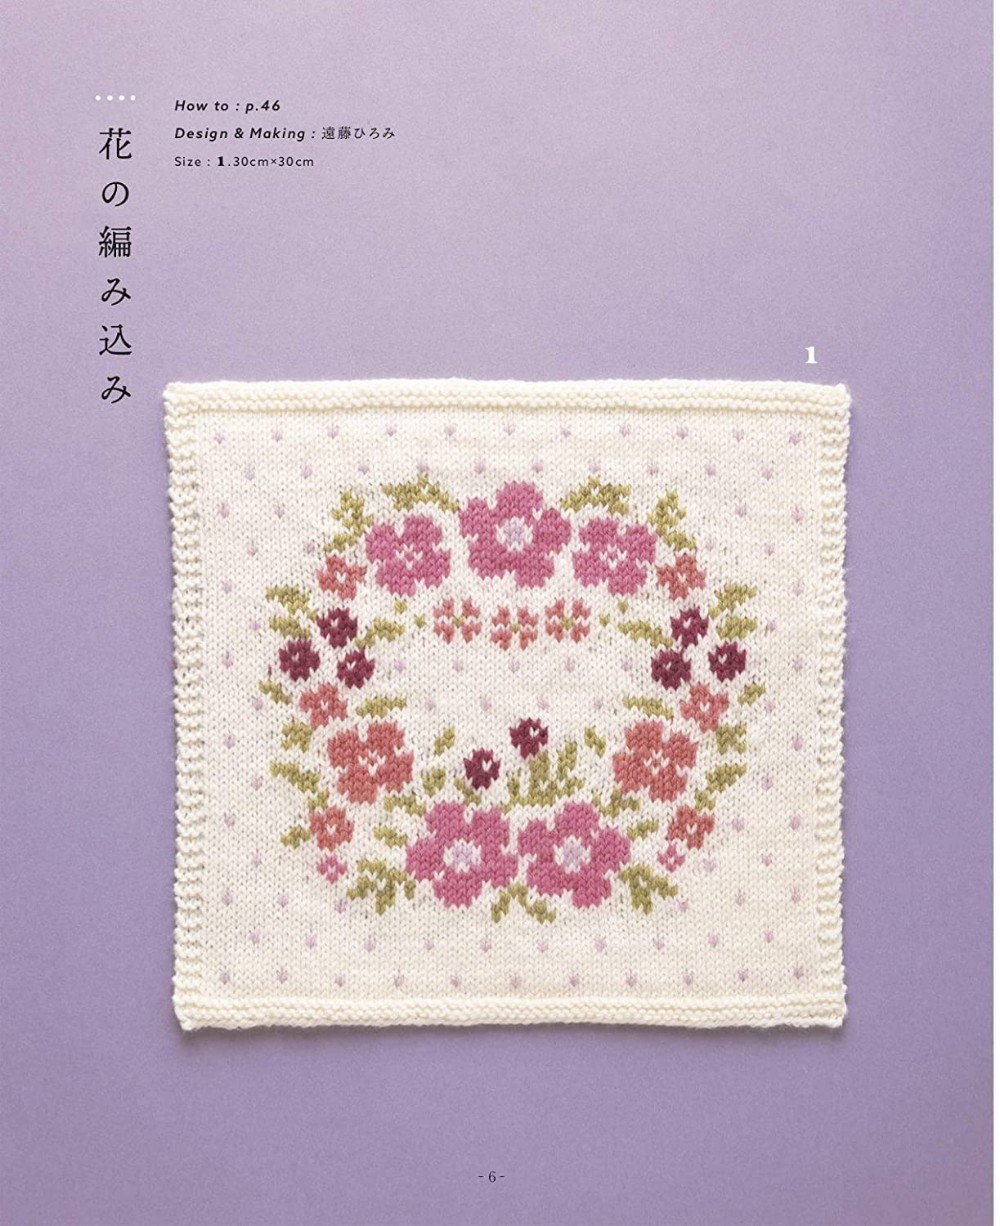 Knitting needle pattern